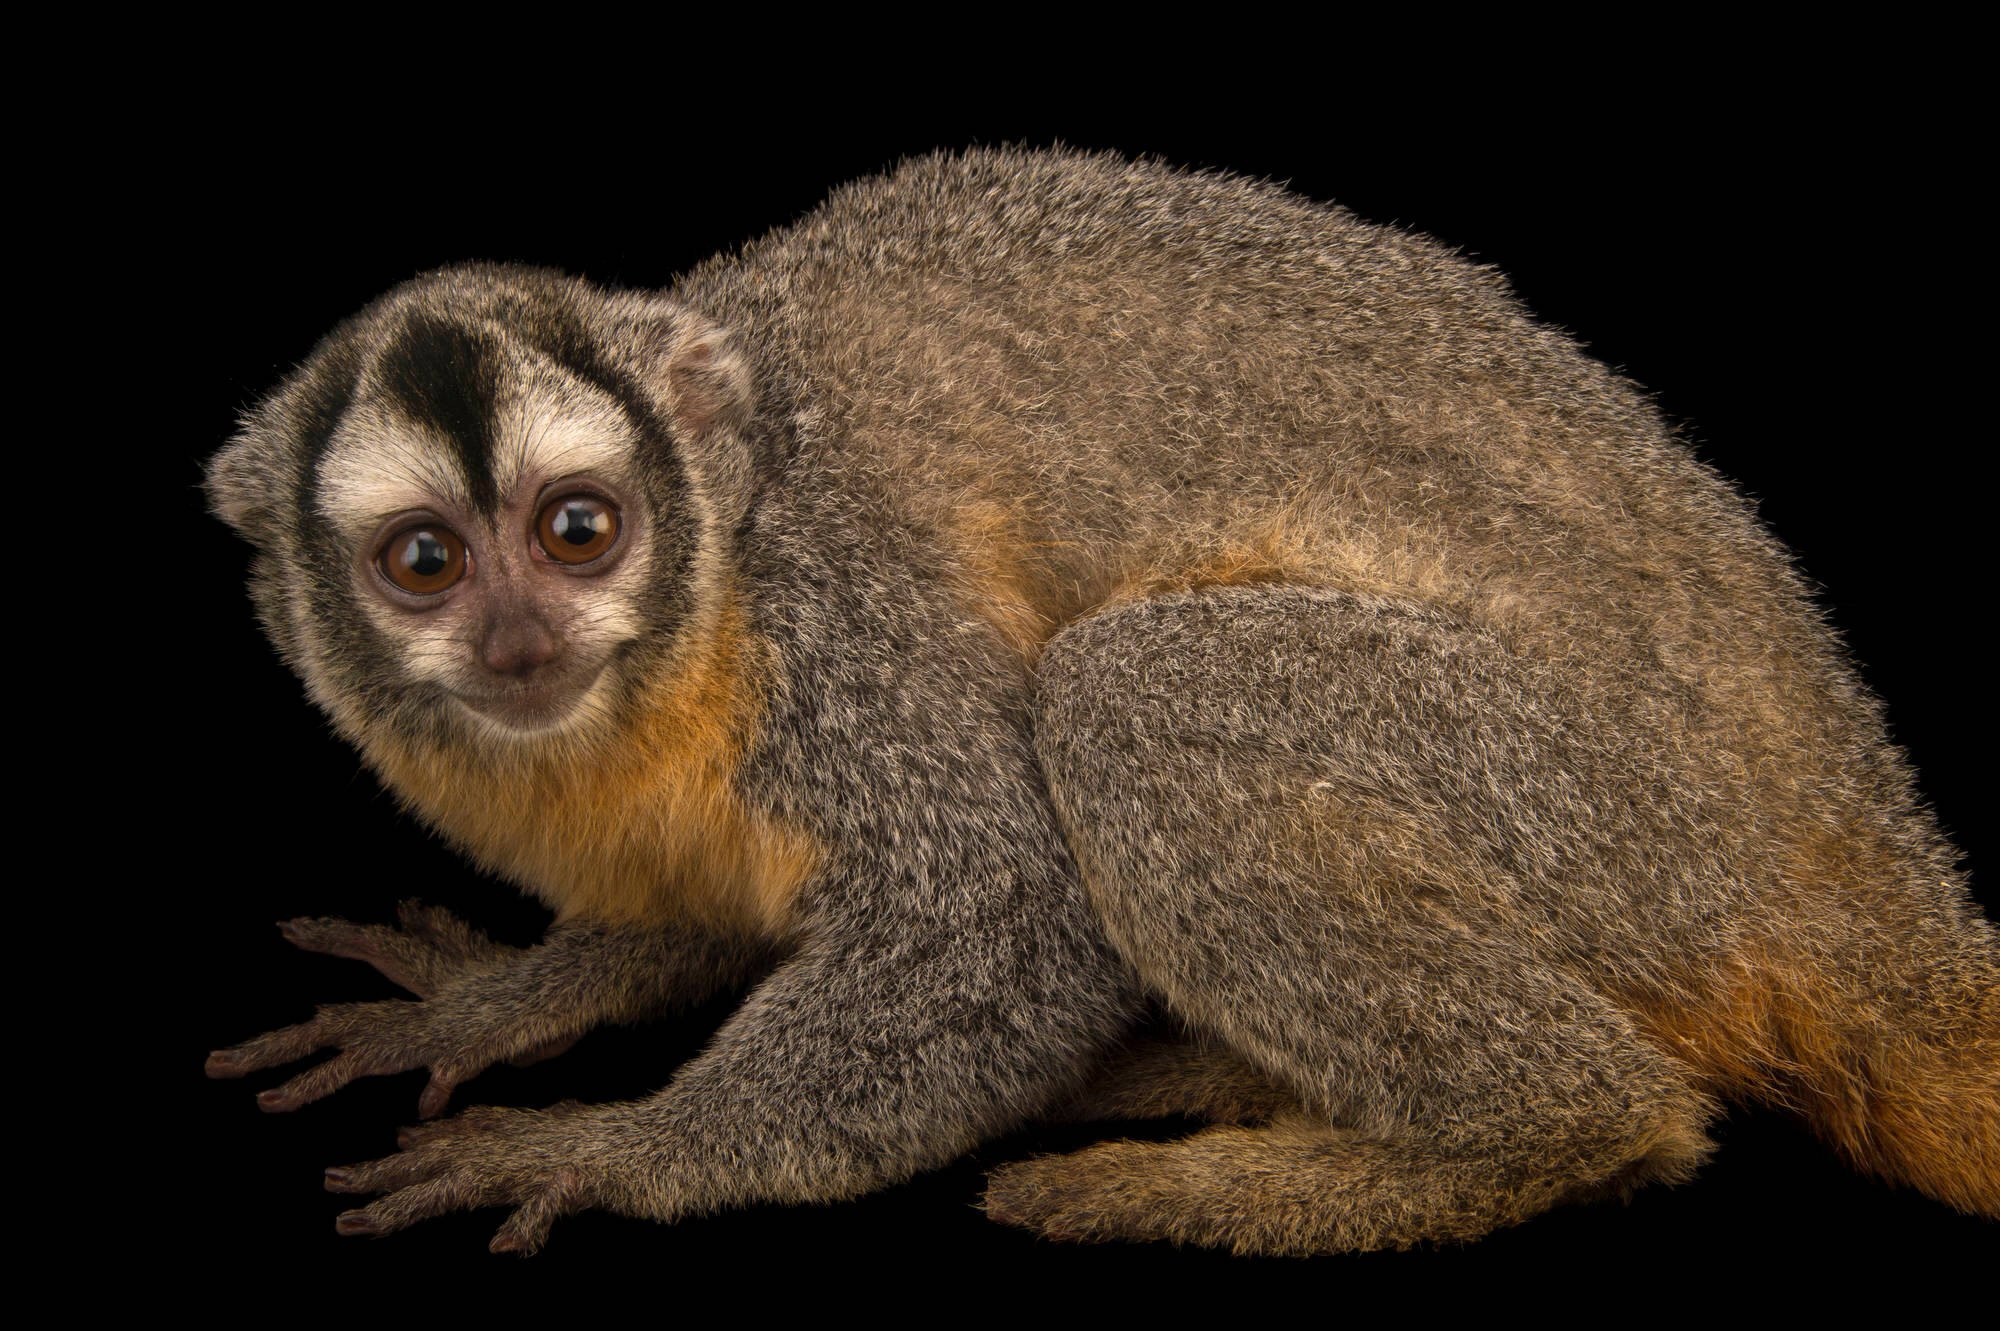 Обезьяна дурукуль 8 букв. Мирикина обезьяна. Aotus zonalis. Сельва мирикина обезьяна. • Панамская мирикина (Aotus lemurinus).